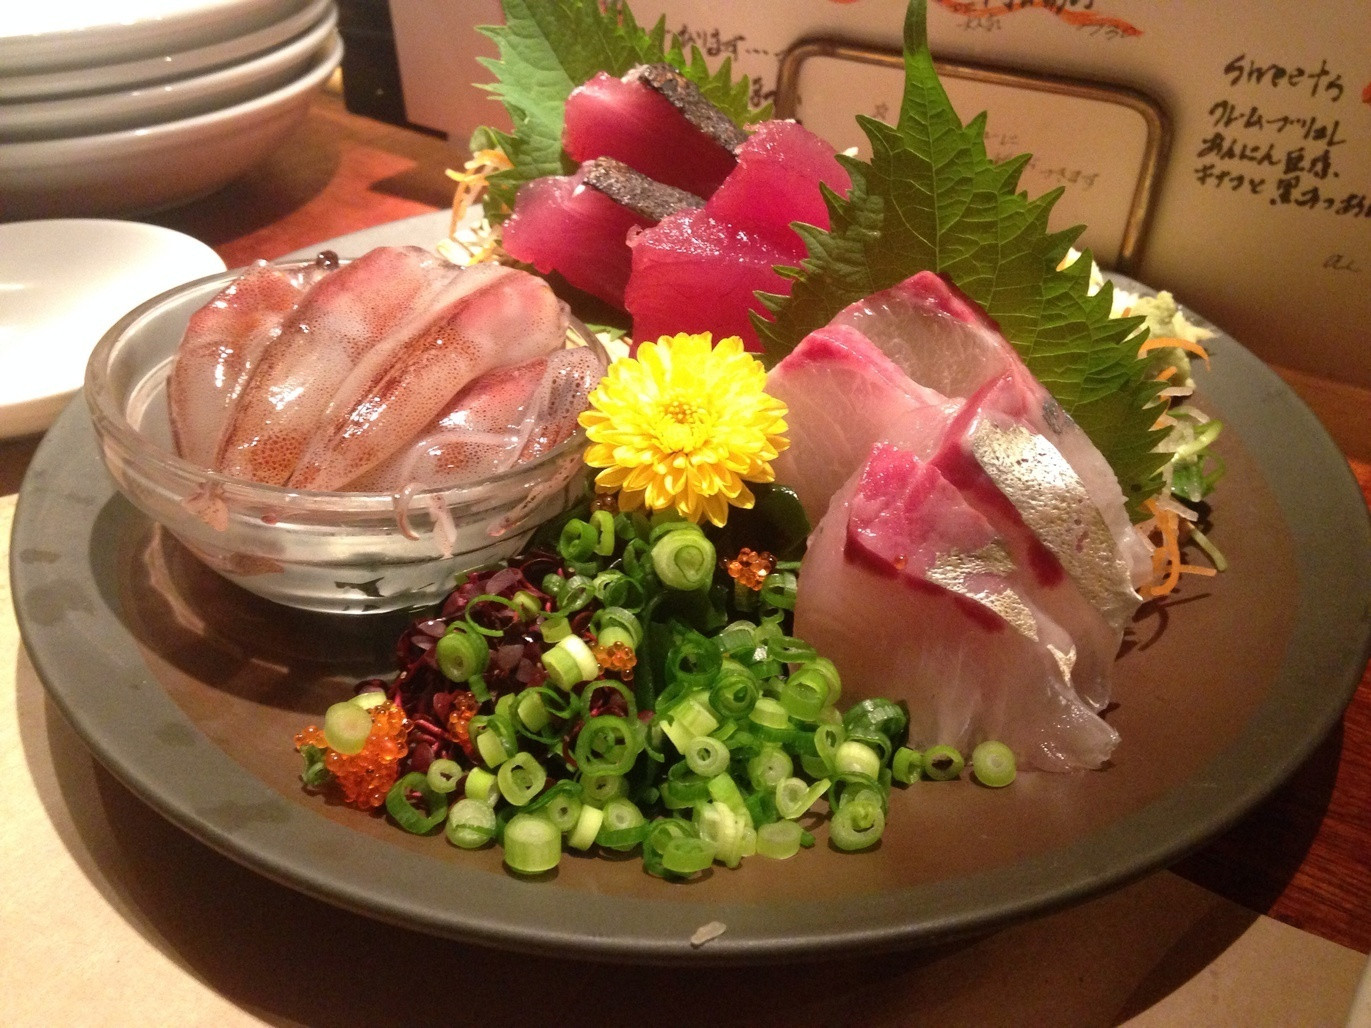 「汁べゑ 渋谷店」料理 764443 お刺身おまかせ3点盛り(ホタルイカ、マグロ、カンパチ)